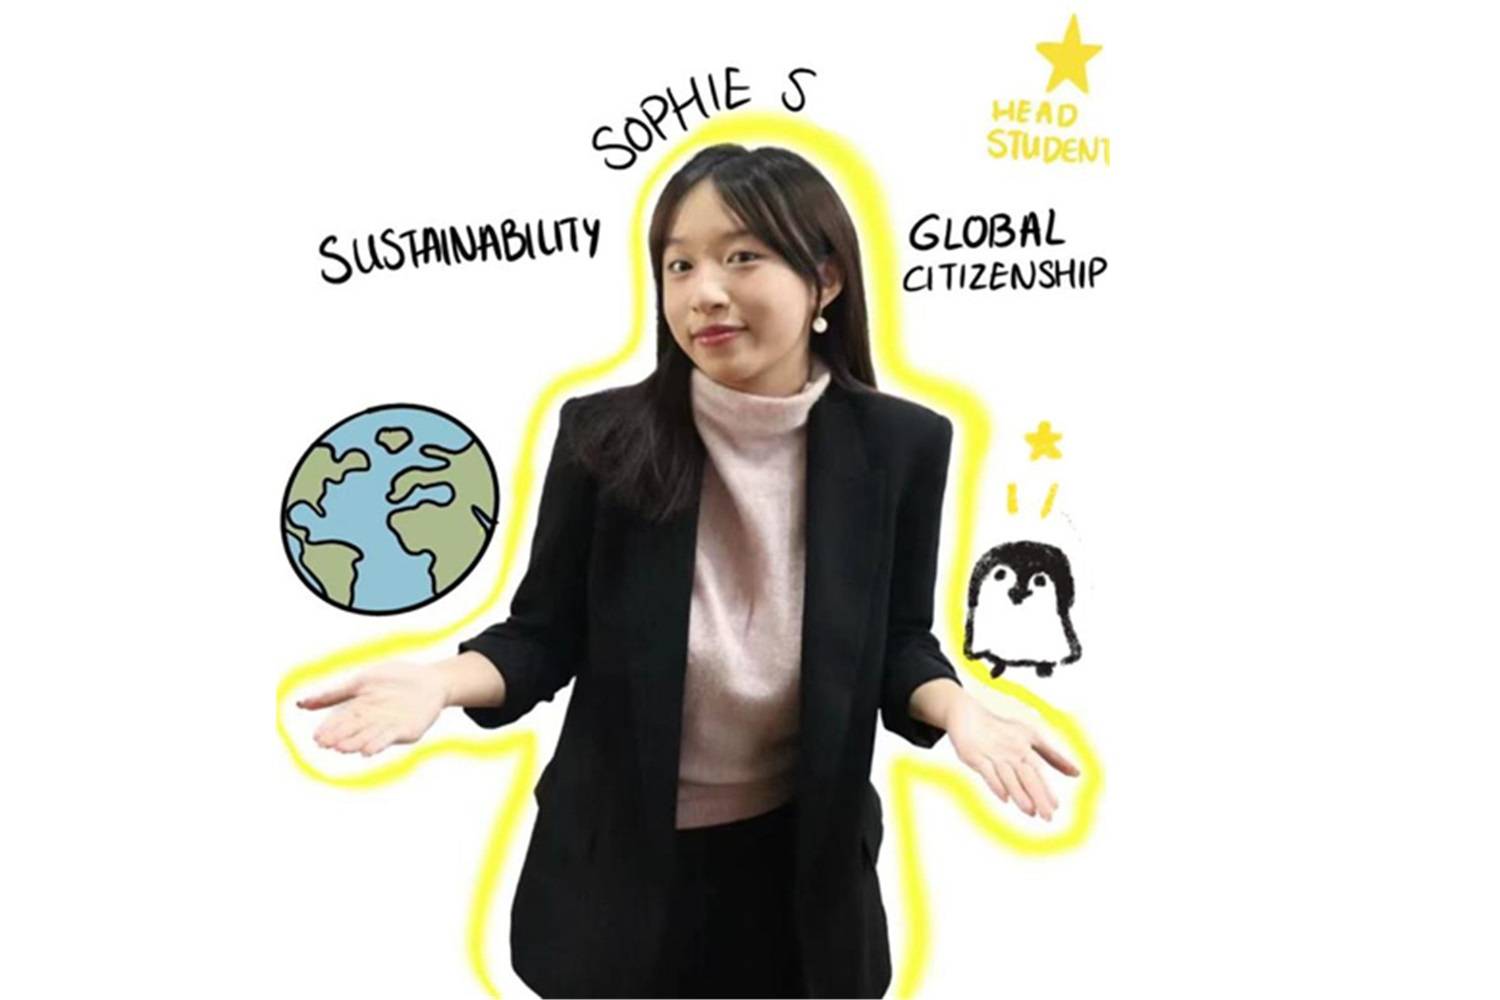 全球公民和可持续发展学生领导：Sophie S